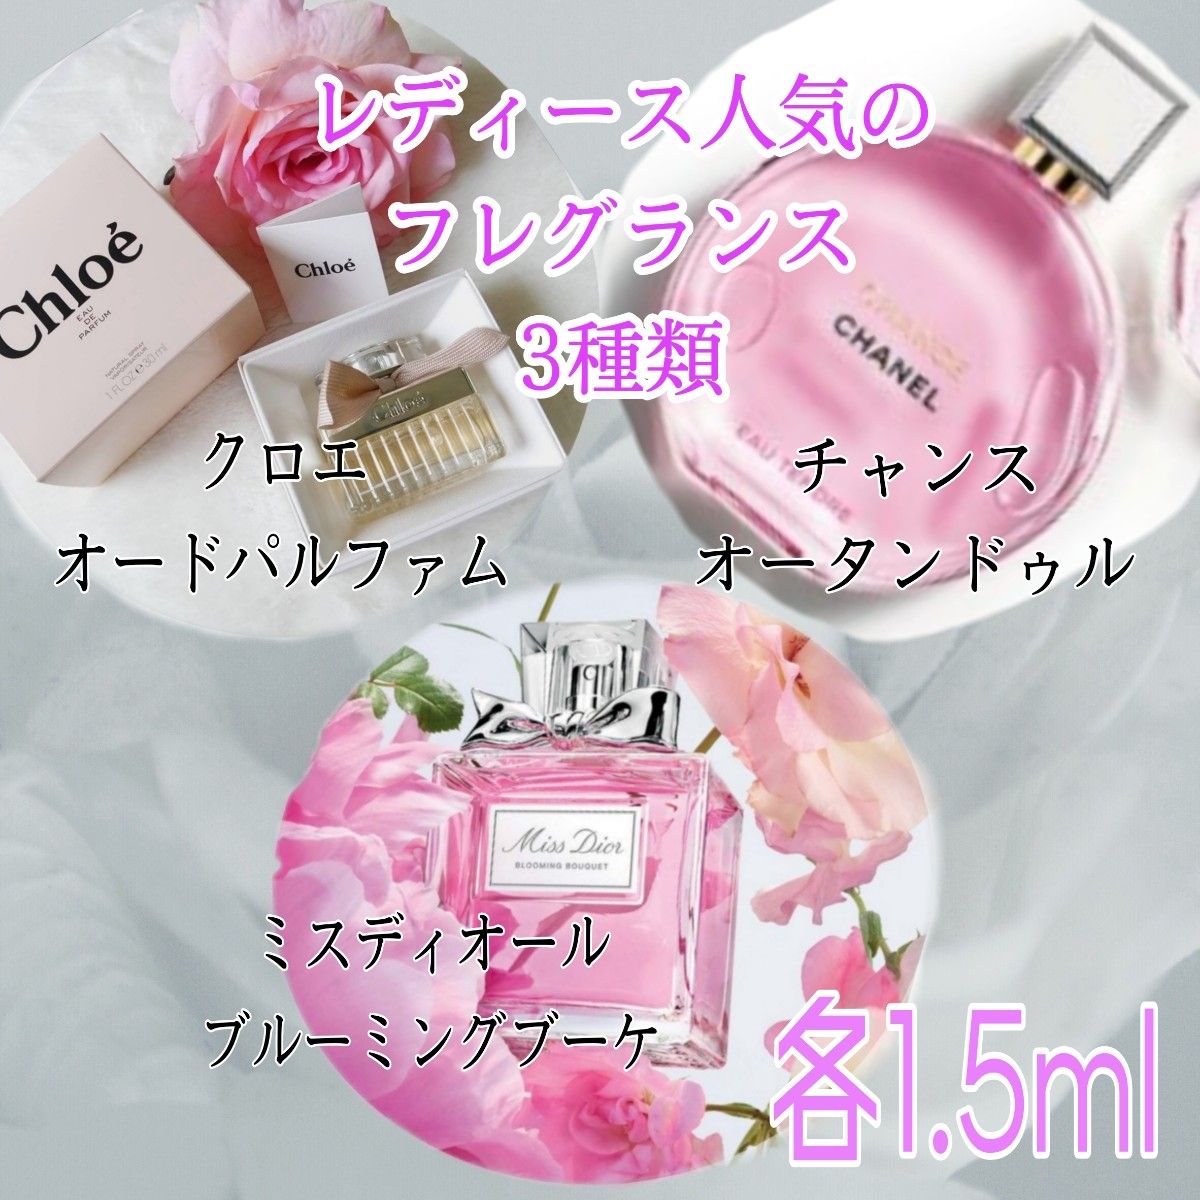 ★クロエ★クリスチャンディオール★シャネル★3種類の香水1.5ml 3本セット